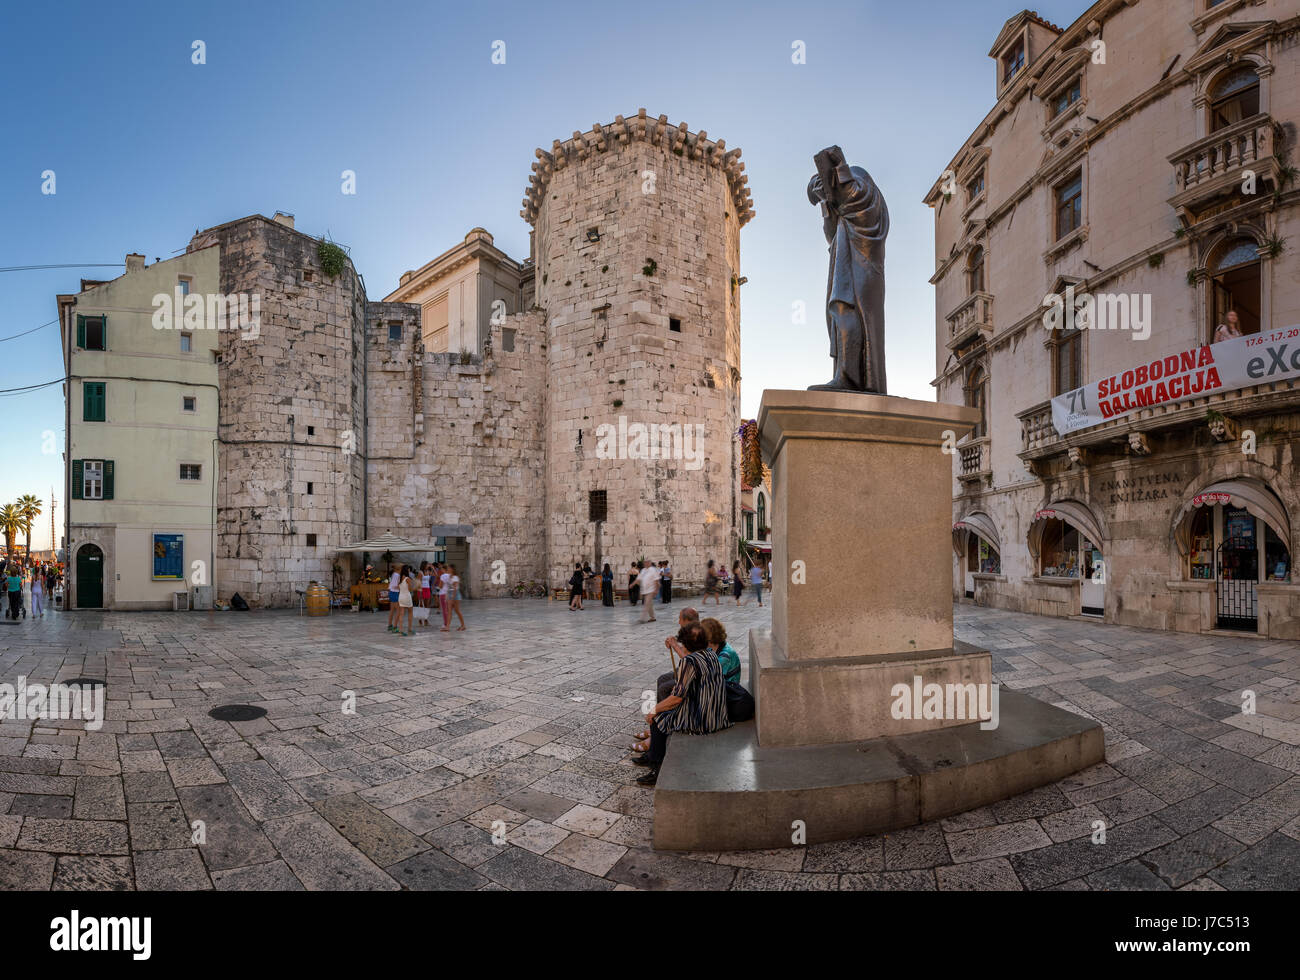 SPLIT, Kroatien - 28. Juni 2014: Panorama der Klammer Radic Square und Statue des kroatischen Dichters Marko Marulic. Marko Marulic wurde am 18 August 1450 geboren. Stockfoto